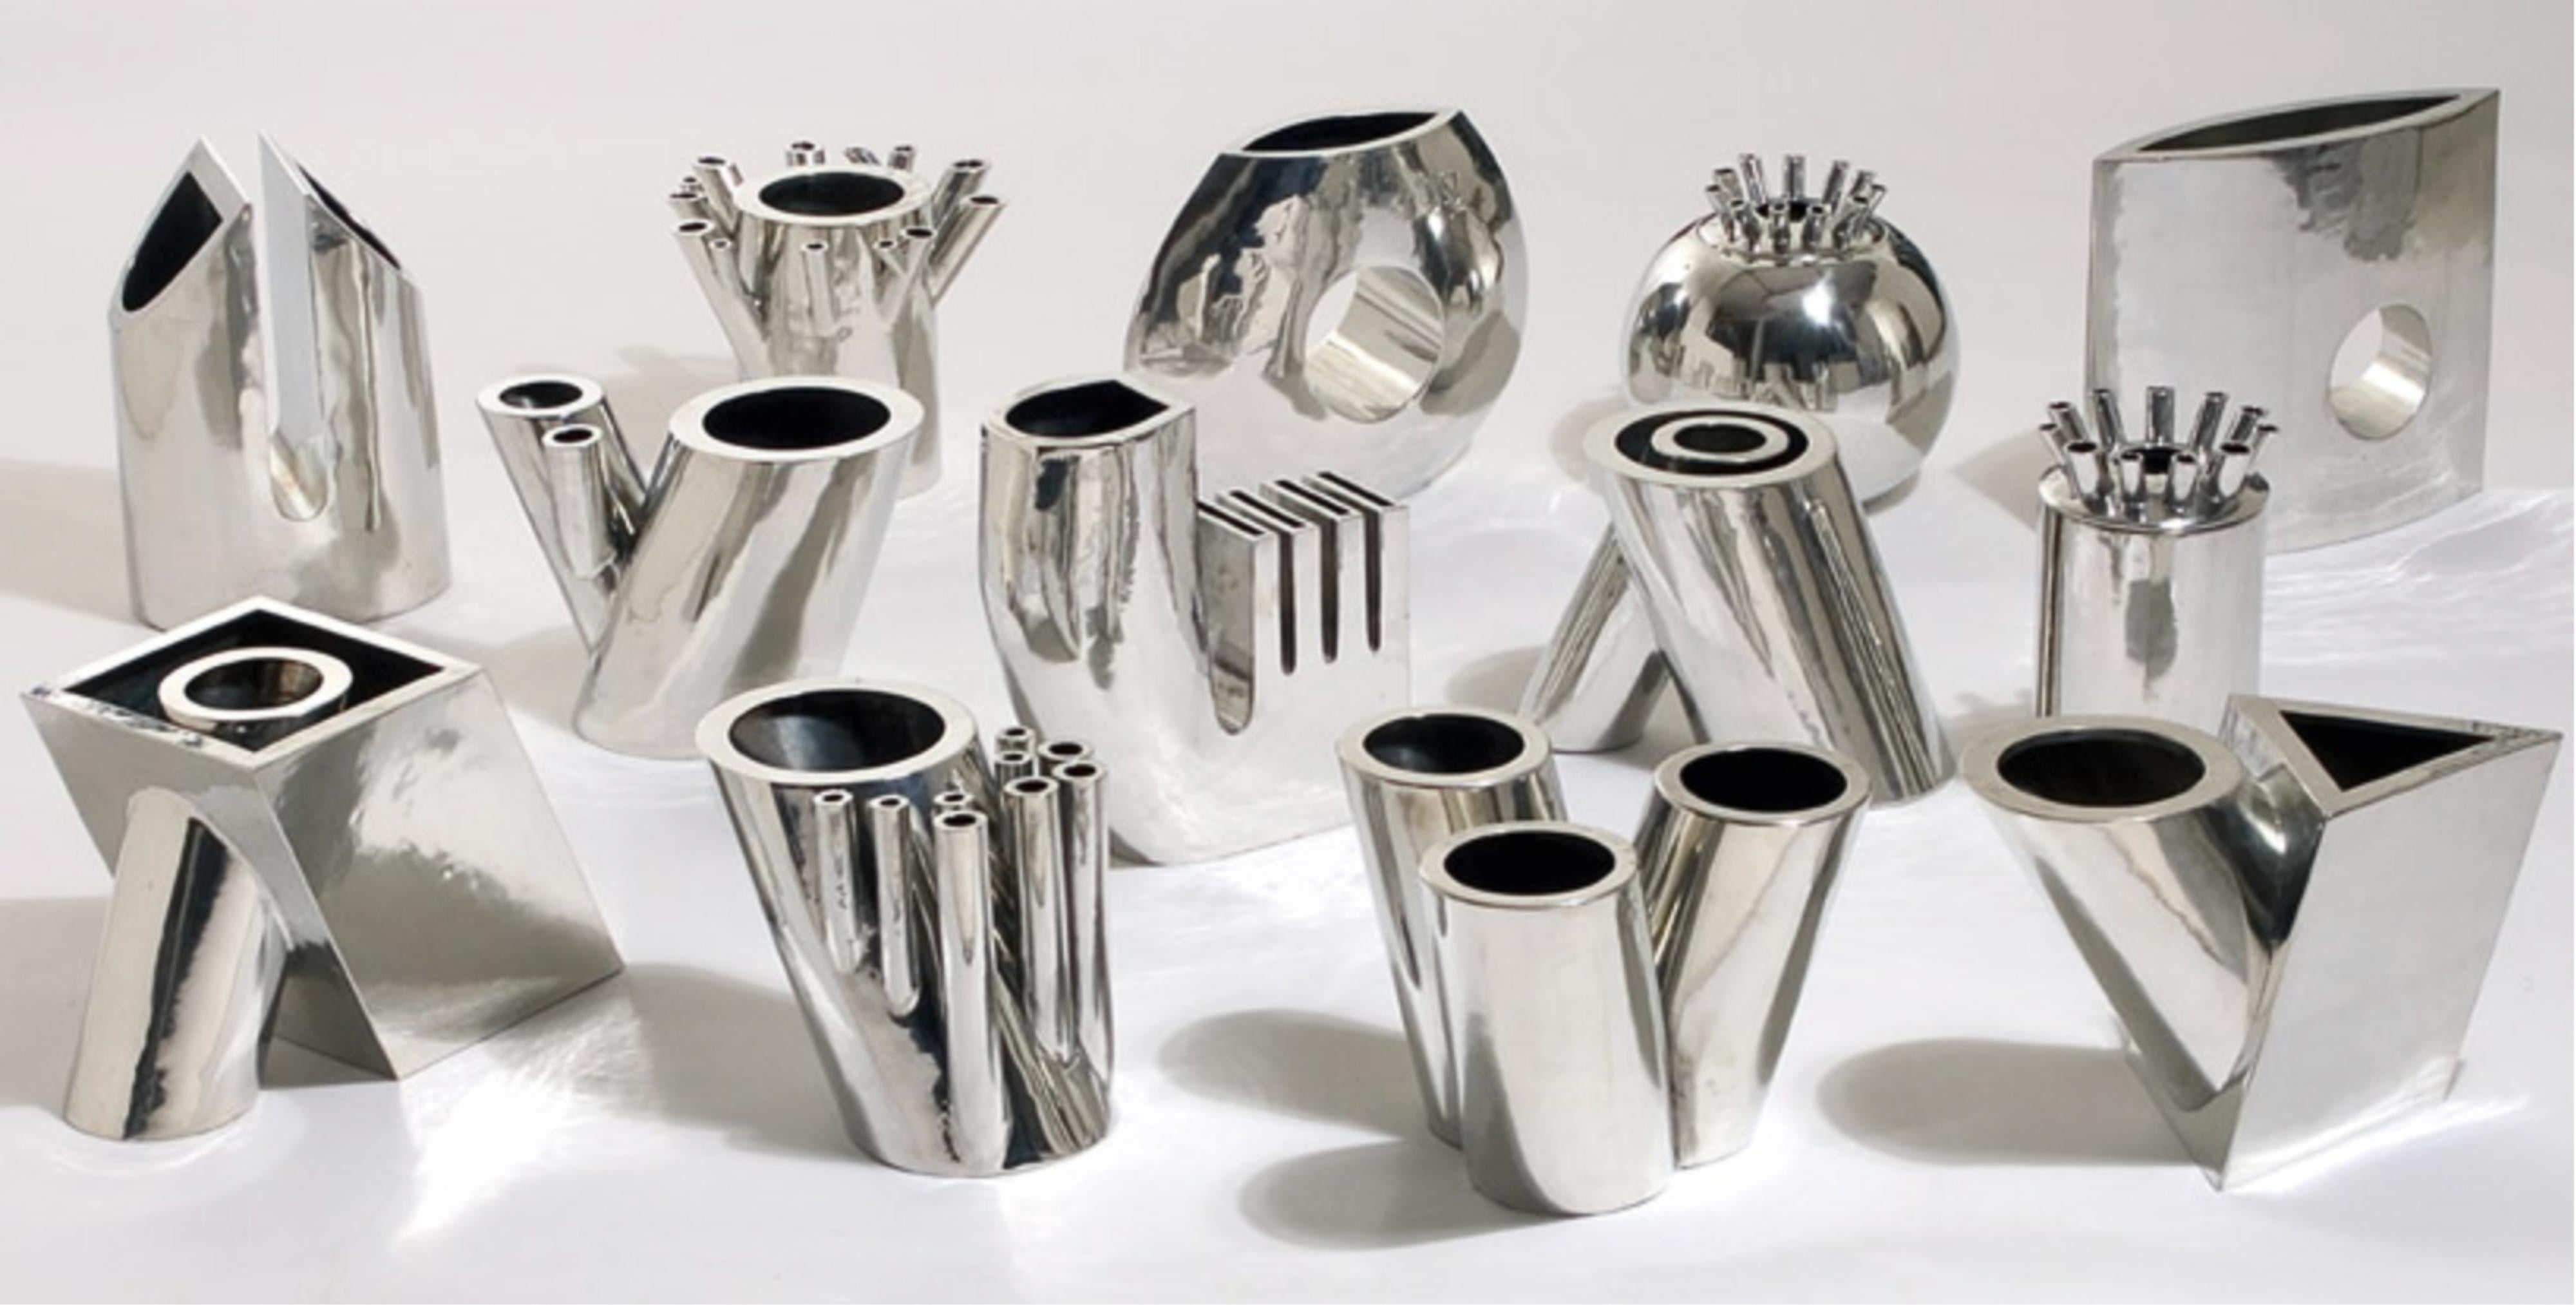 Mario Botta for Numa 'Tredicivasi' Signed Pewter Vase Artist Proof Prototype  For Sale 3